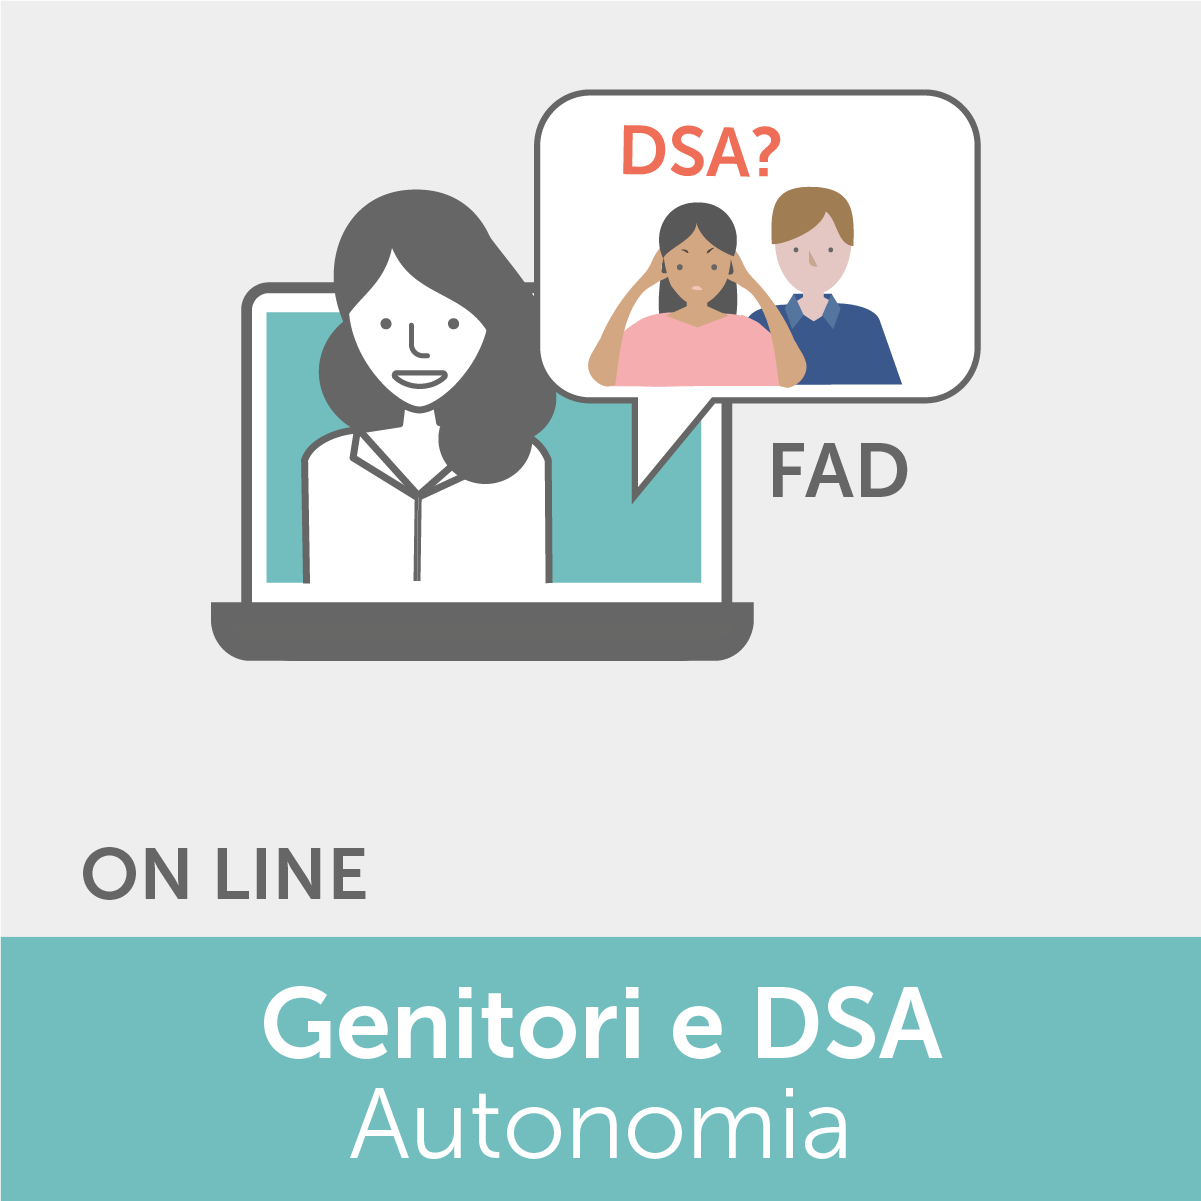 FAD - Genitori e DSA: strategie e strumenti verso l'autonomia